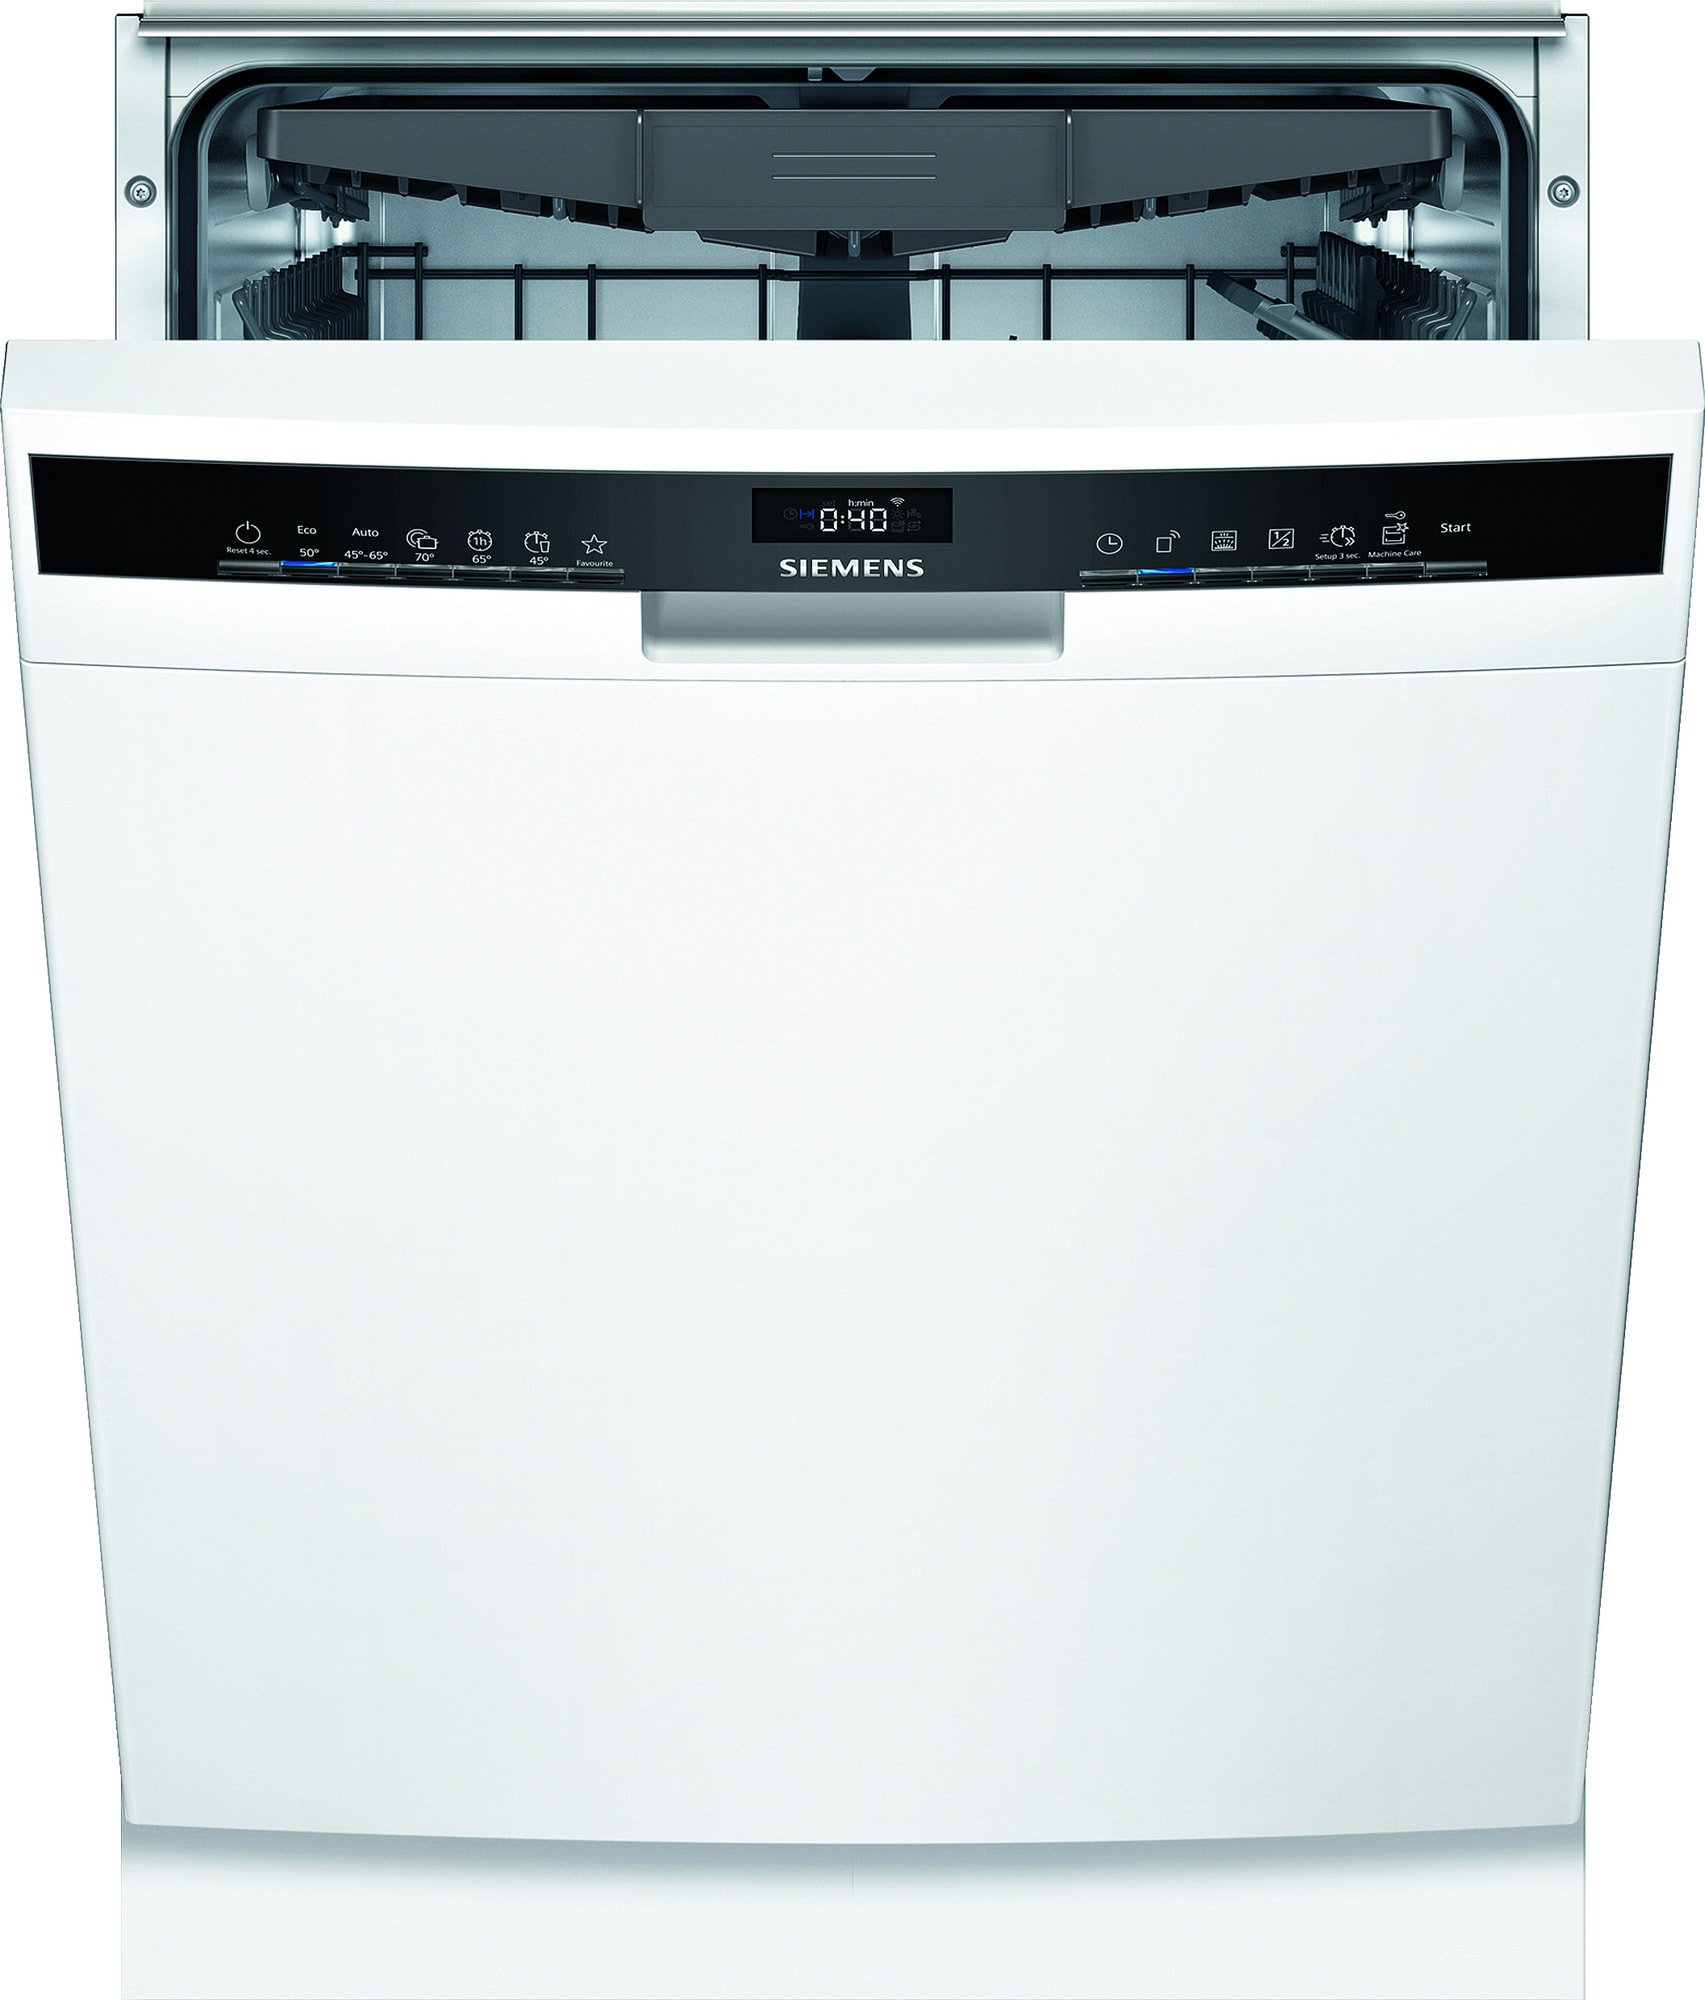 Køb Opvaskemaskiner online til meget lav pris!